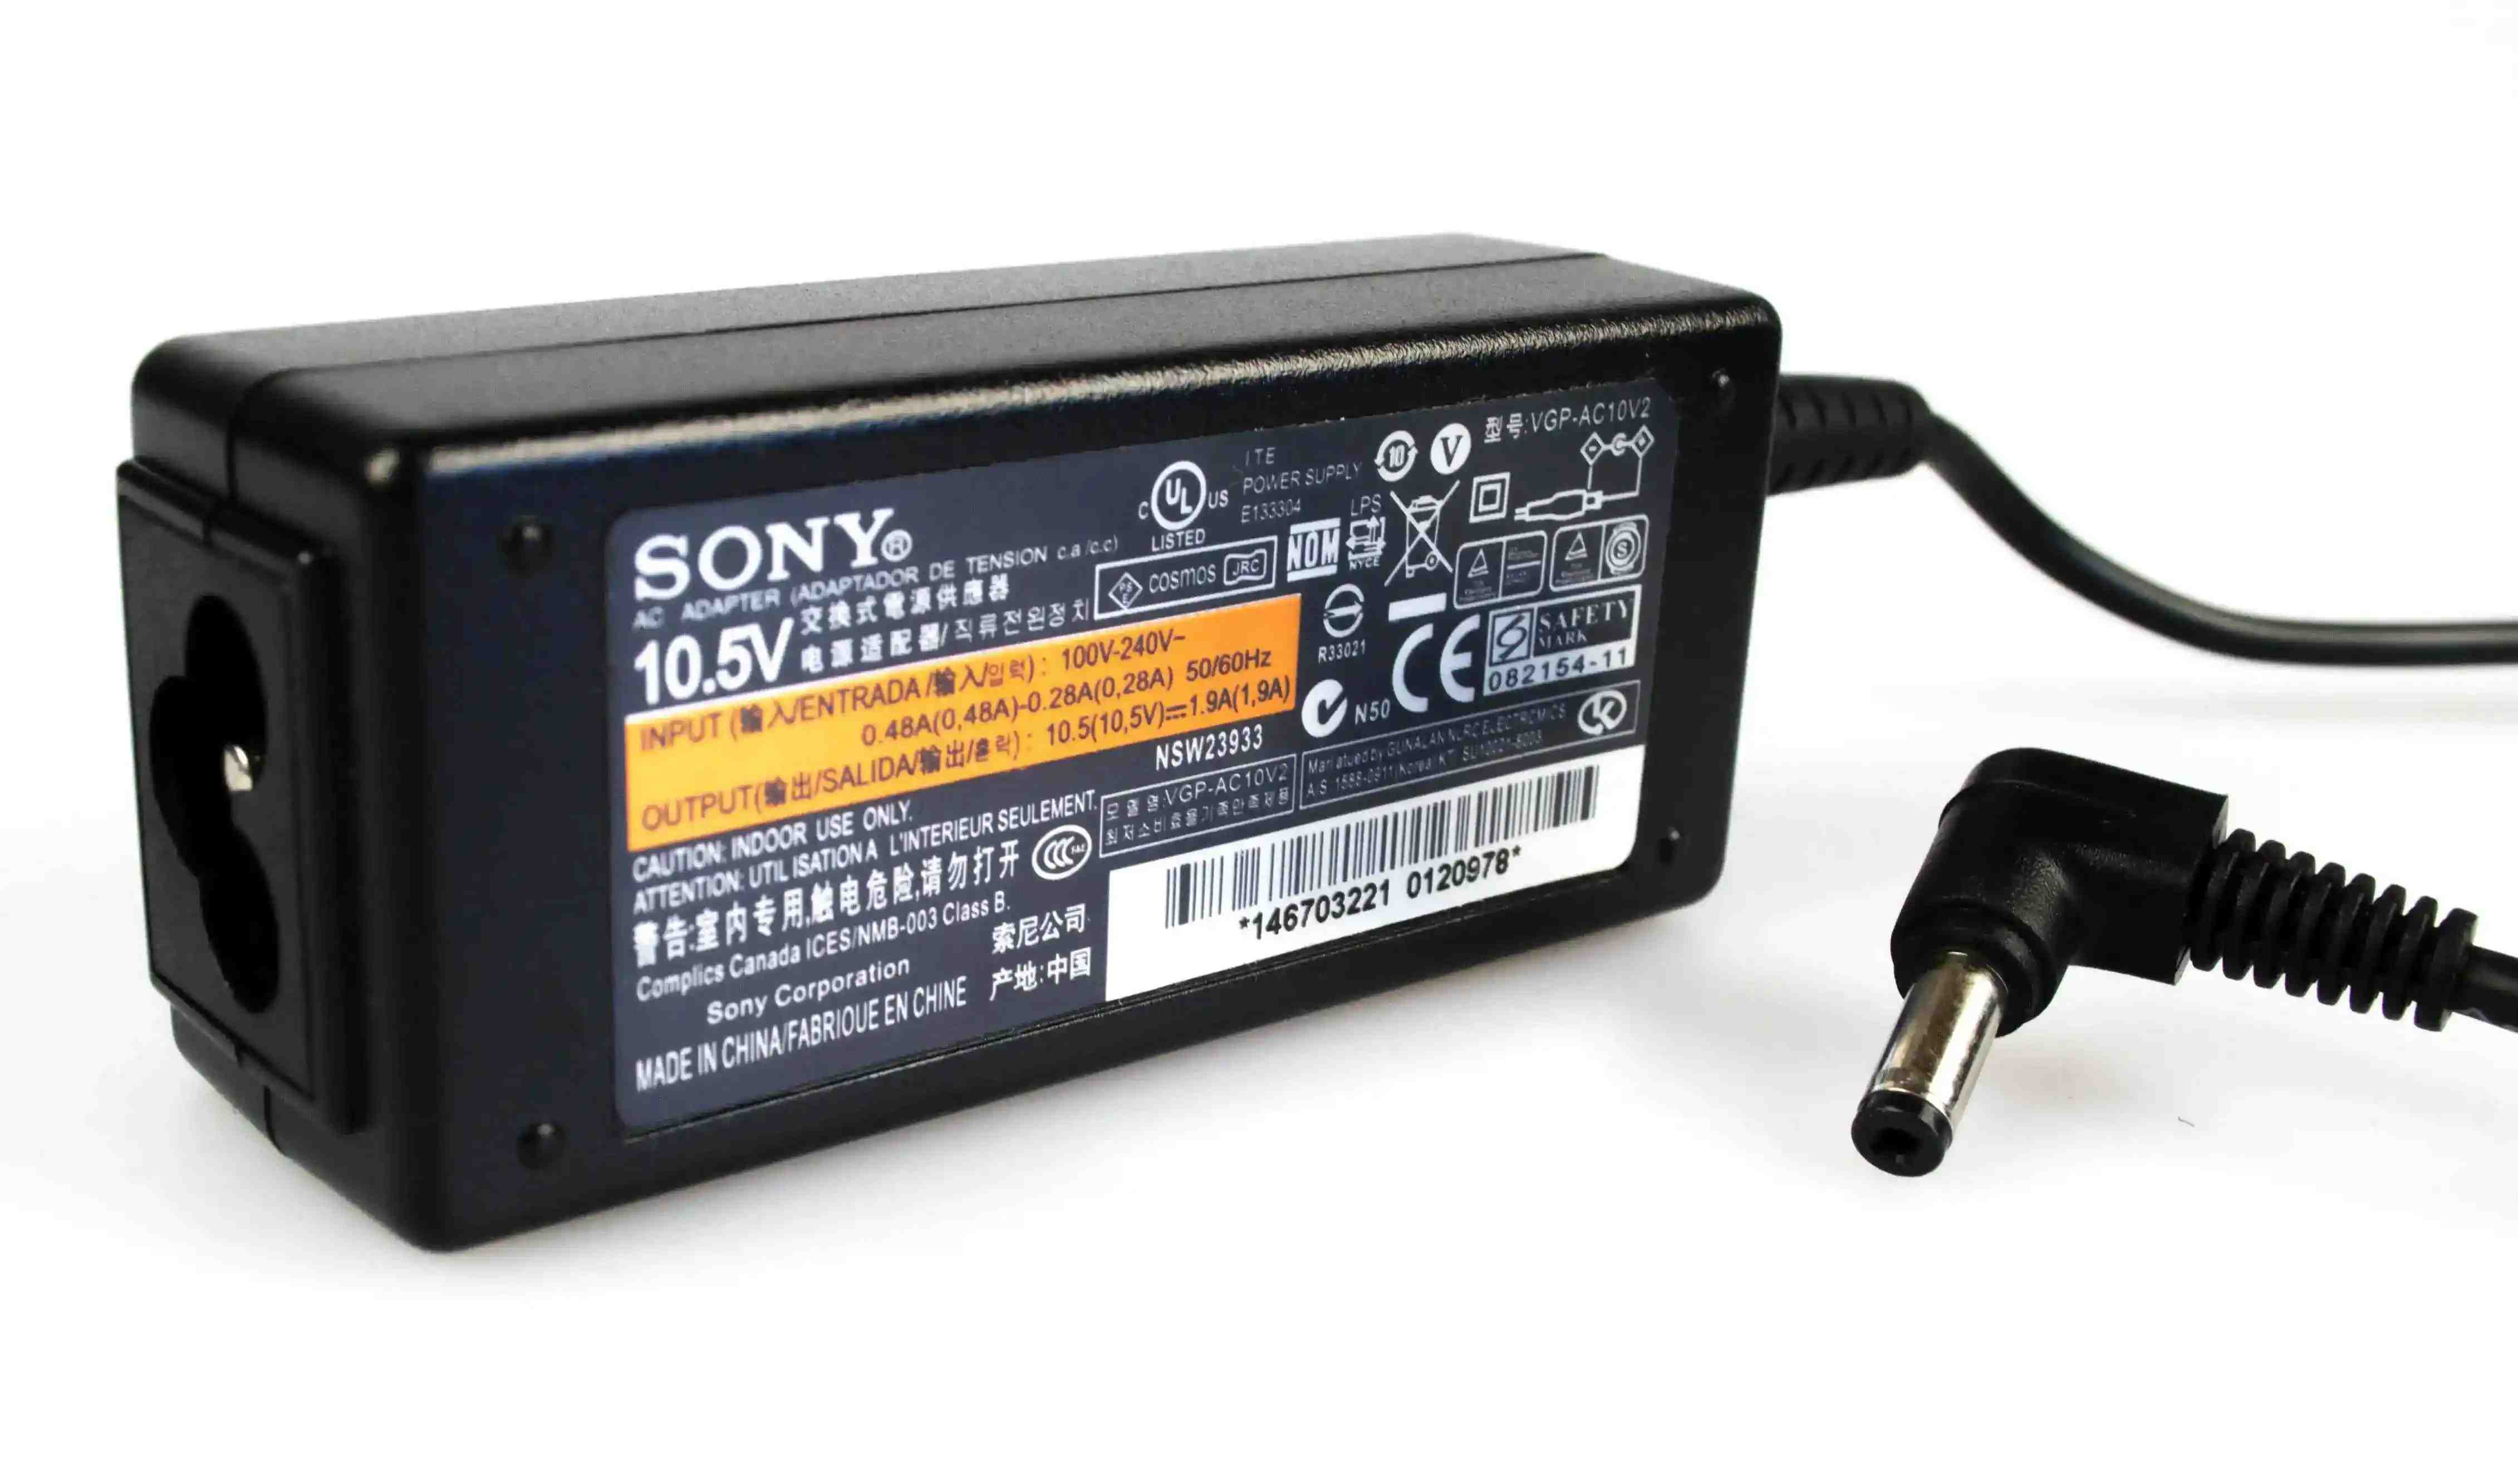 Sony VAIO VGP-AC10V2 10.5V 1.9A 20W (4.8*1.7)